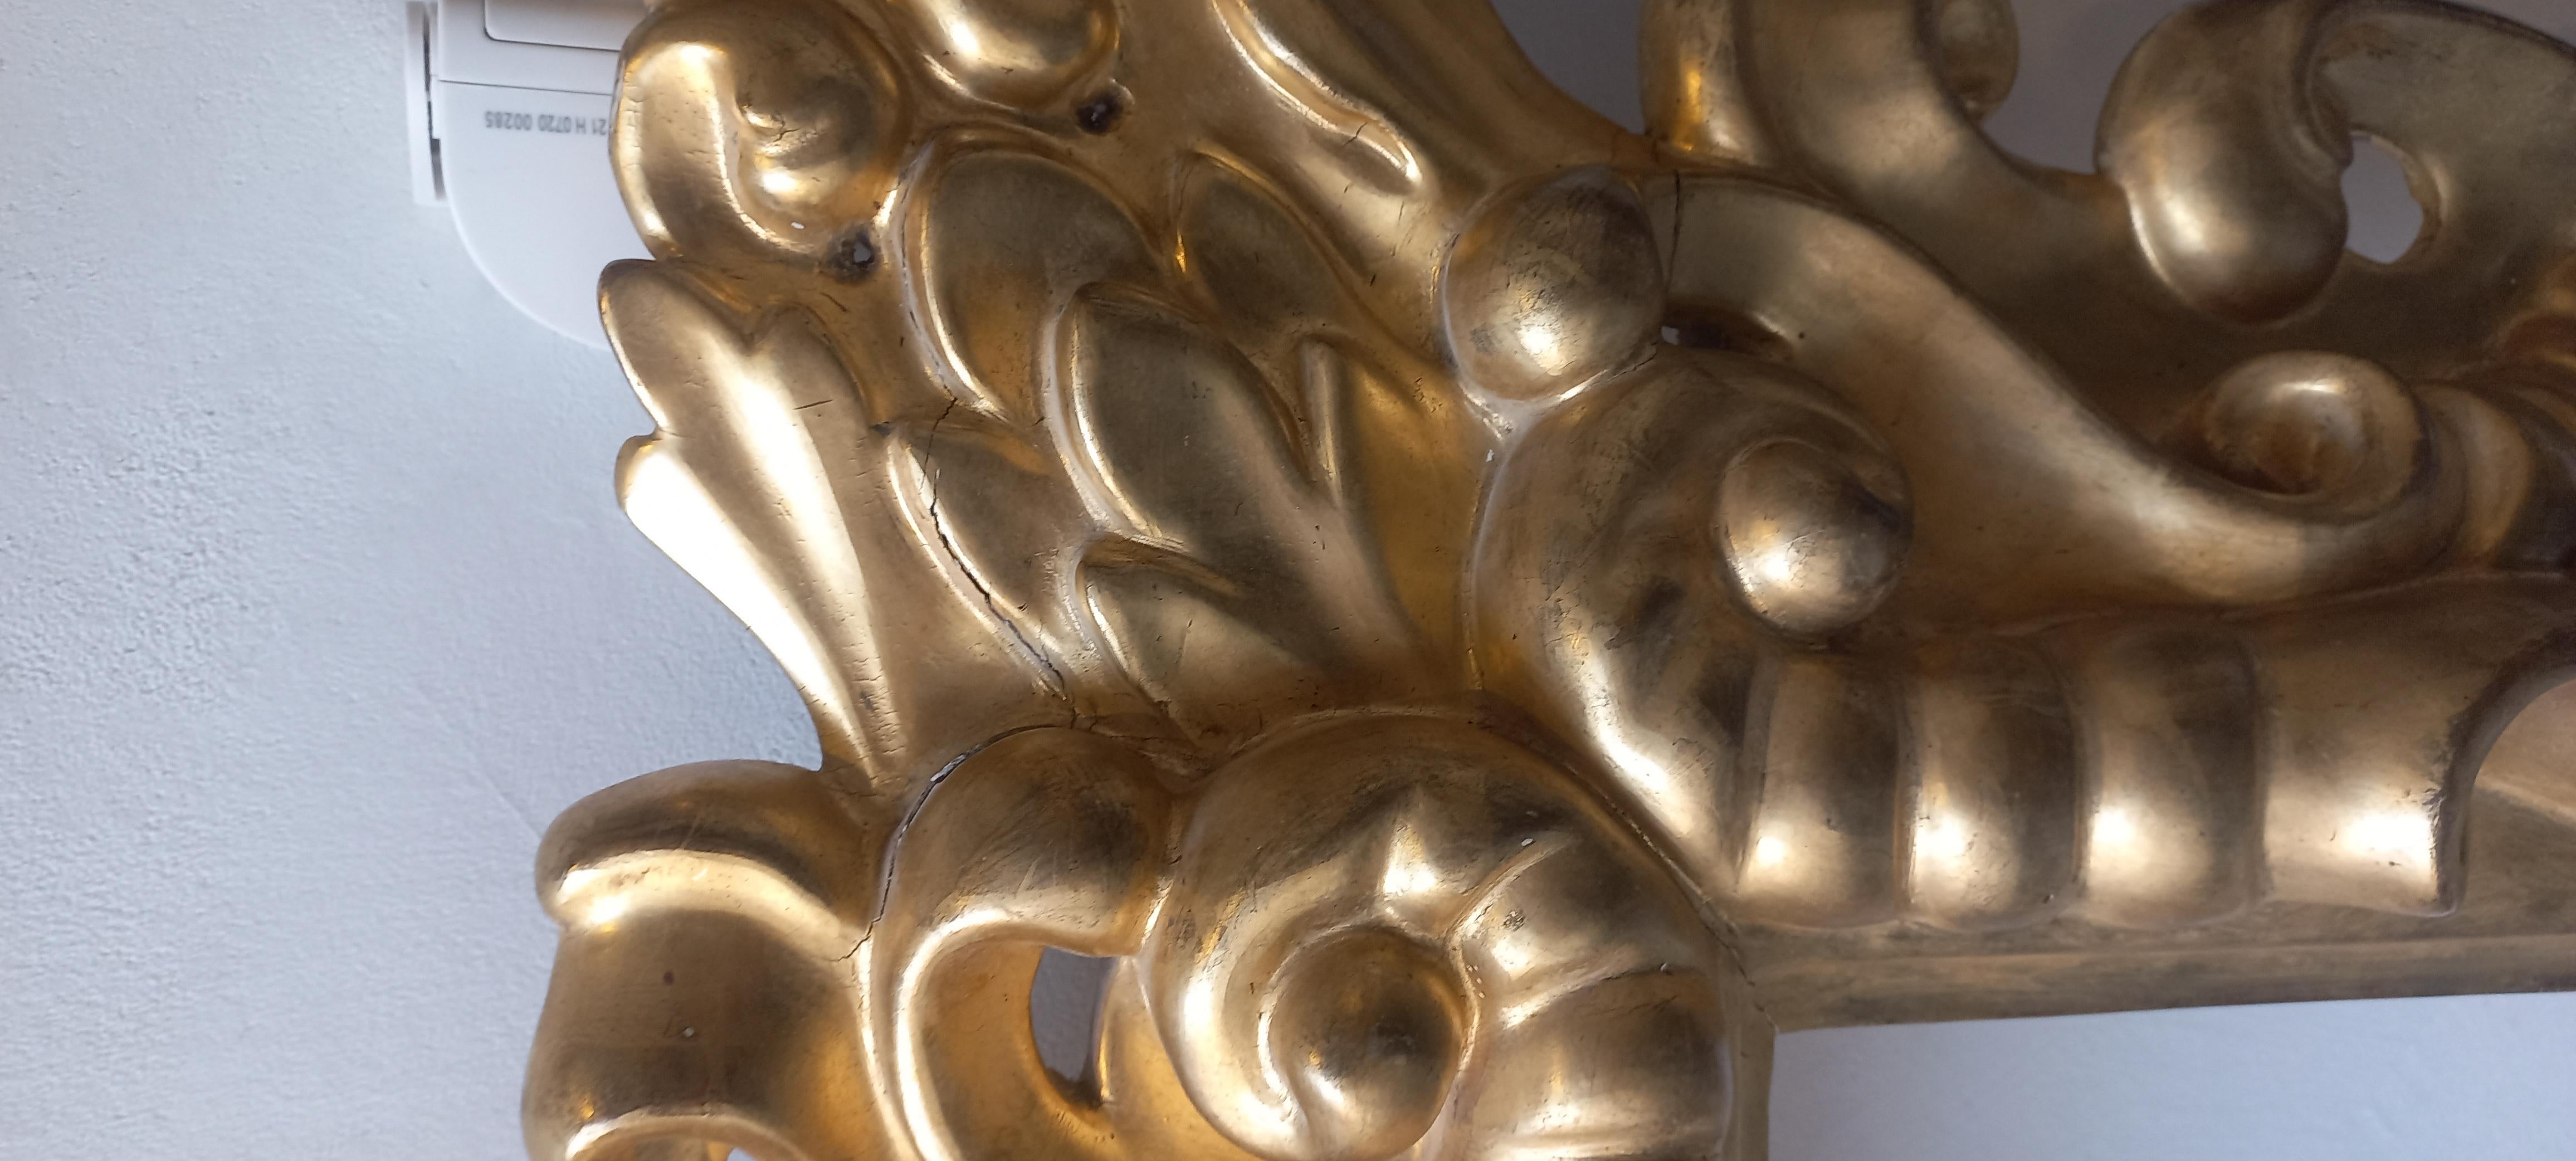 Cornice intagliata in legno dorato a foglia d'oro, XIX secolo su modello seicentesco, misure 102x75 cm, misure interne 43x69 cm, luce 39.5x65.2 cm. La stecca ha uno spessore di 20 cm.
La cornice si presta per decorare un dipinto antico o moderno, ma